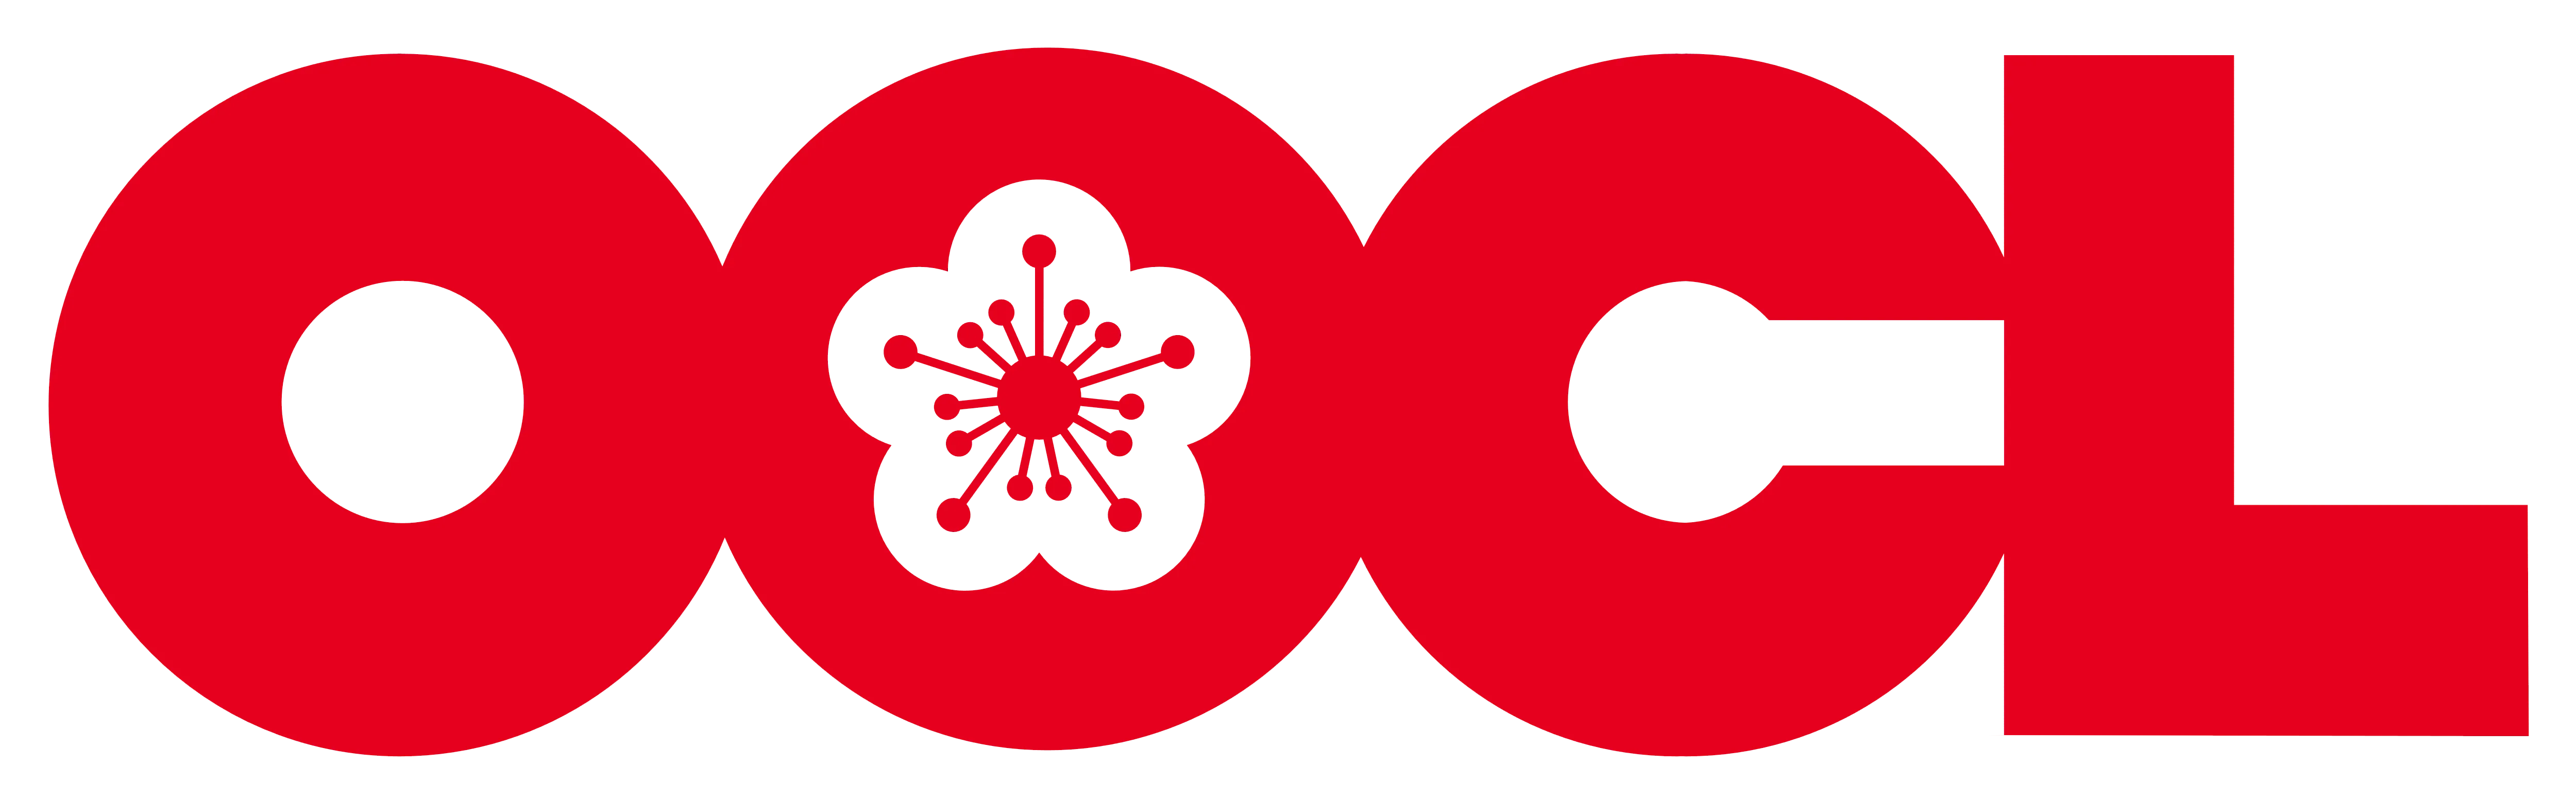 logo-OOCL